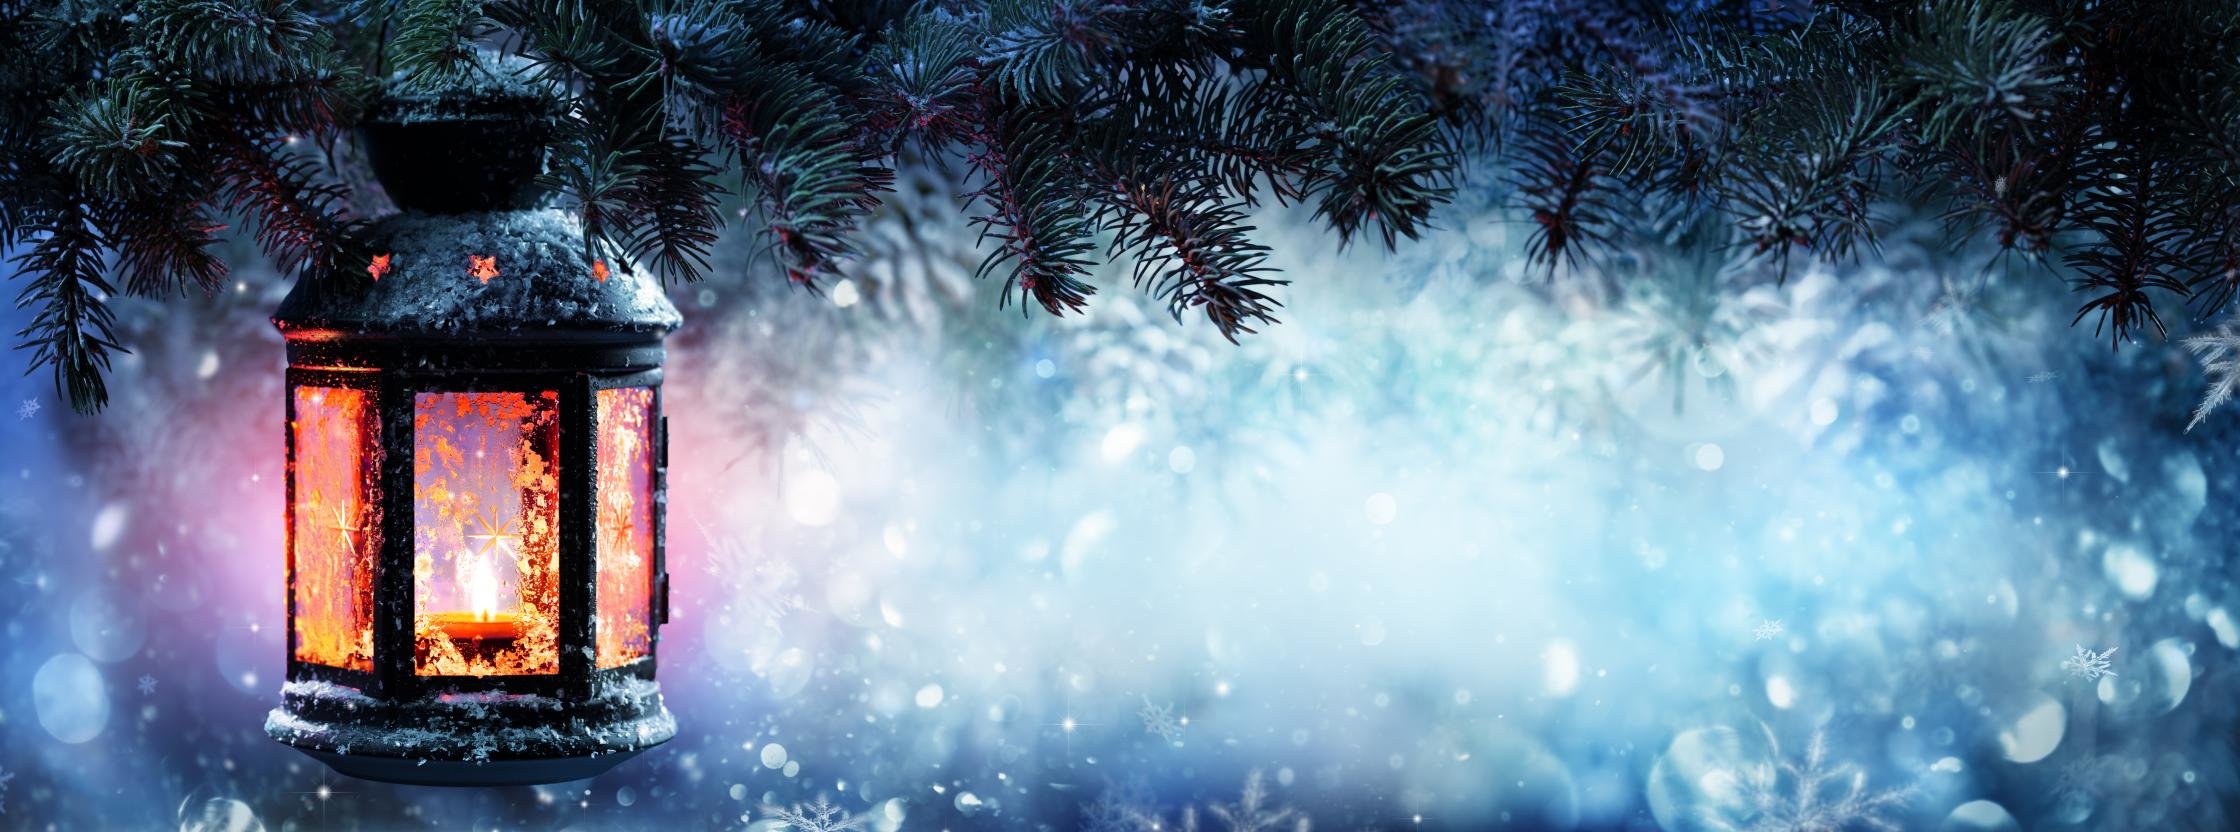 dual monitor weihnachten wallpaper,blau,himmel,winter,baum,atmosphäre